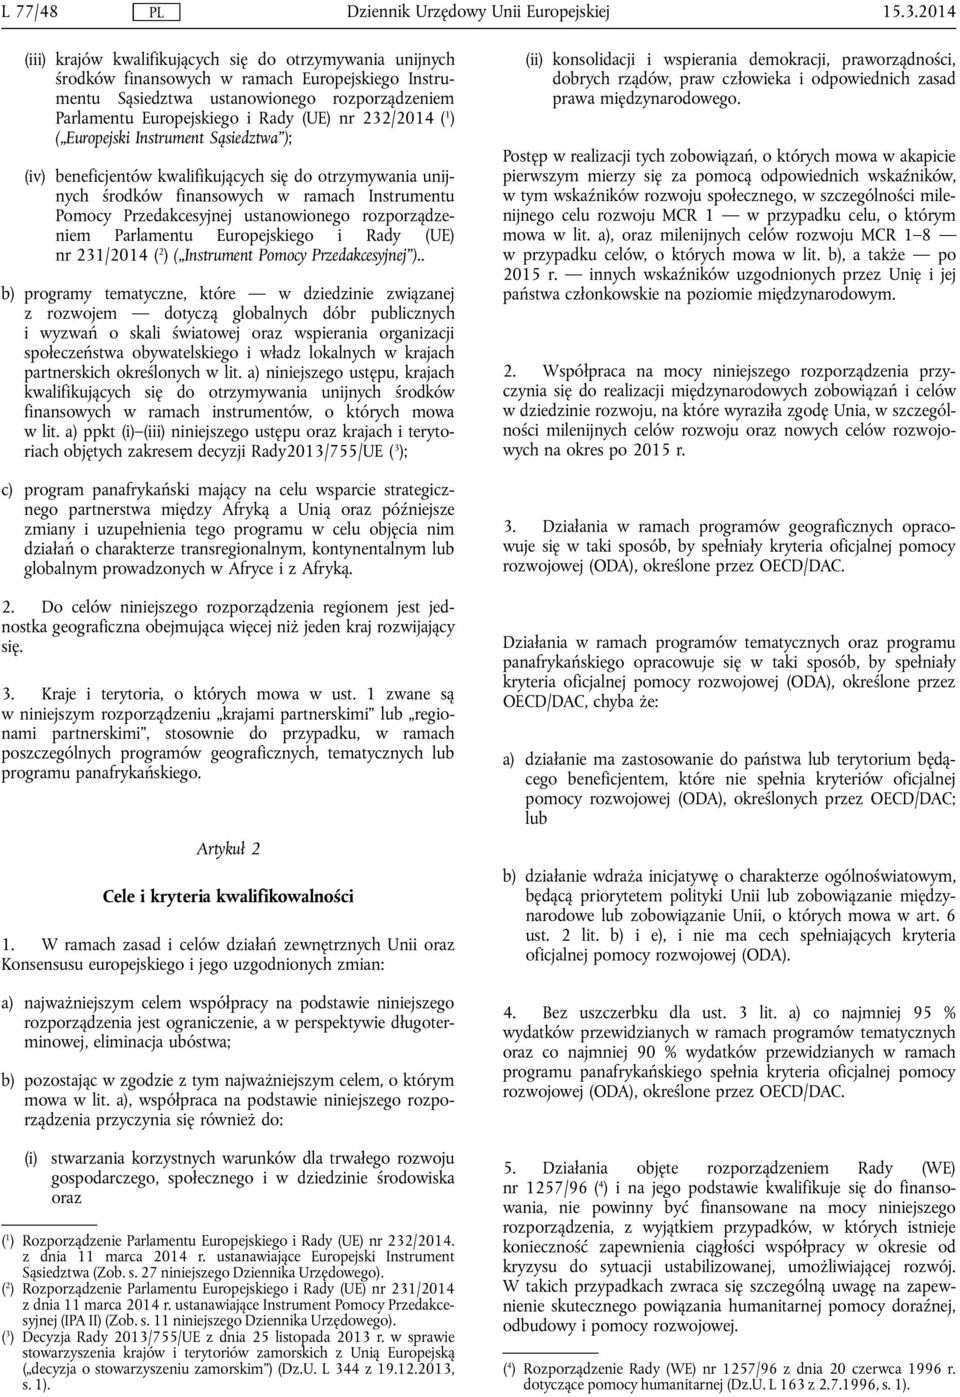 232/2014 ( 1 ) ( Europejski Instrument Sąsiedztwa ); (iv) beneficjentów kwalifikujących się do otrzymywania unijnych środków finansowych w ramach Instrumentu Pomocy Przedakcesyjnej ustanowionego